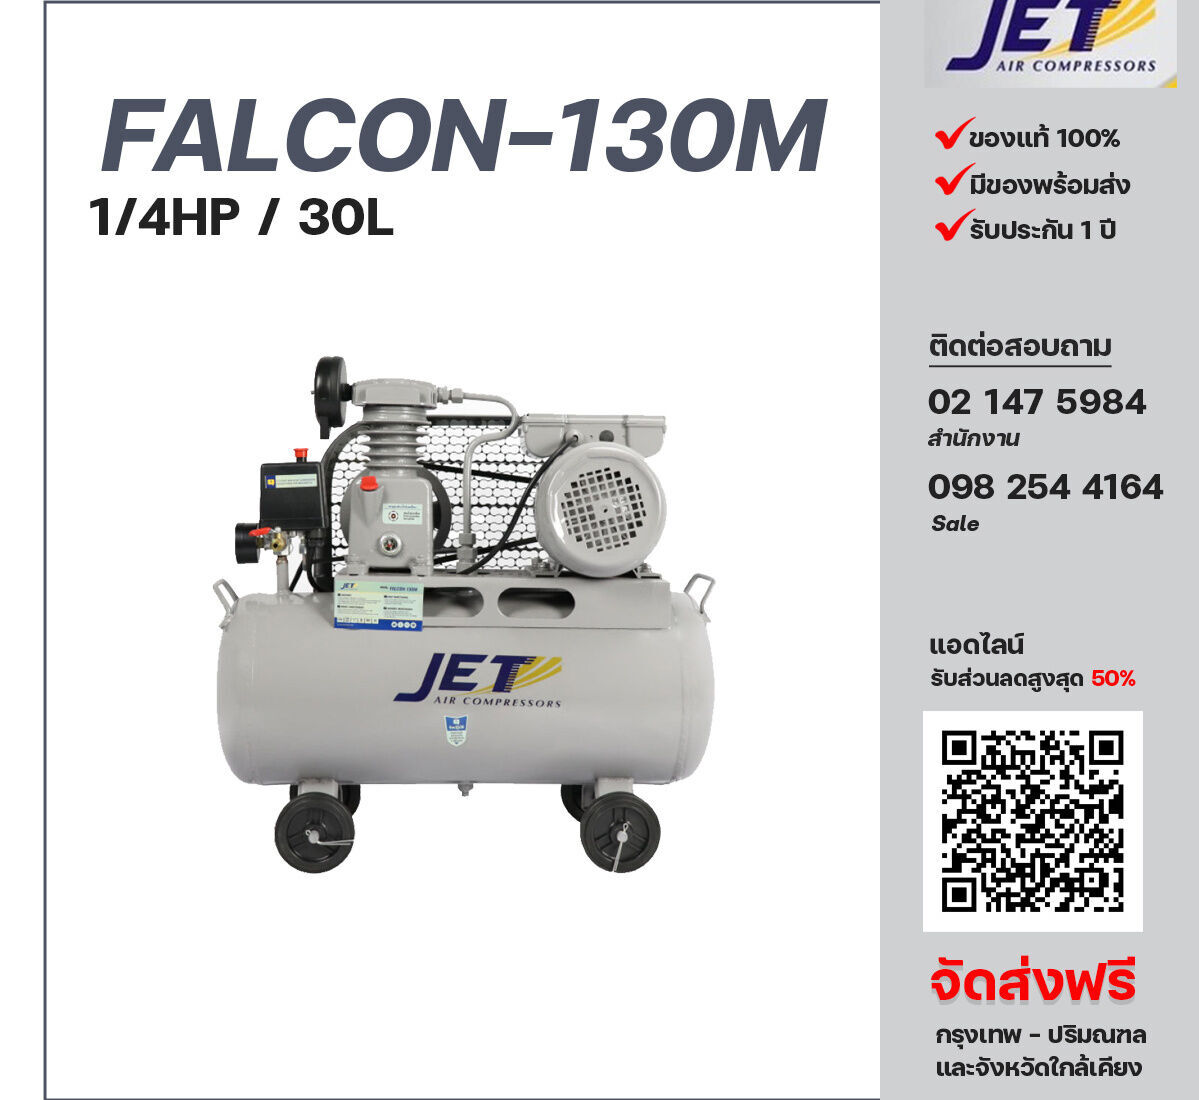 ปั๊มลมสายพาน JET ขนาด 1/4 แรงม้า รุ่น FALCON-130M ไฟฟ้า 220V มอเตอร์ 1 แรงม้า ไฟฟ้า 220 โวลต์ ถังเก็บลมขนาด 30 ลิตร รับประกัน 1 ปี ตามเงื่อนไขบริษัทผู้ผลิต